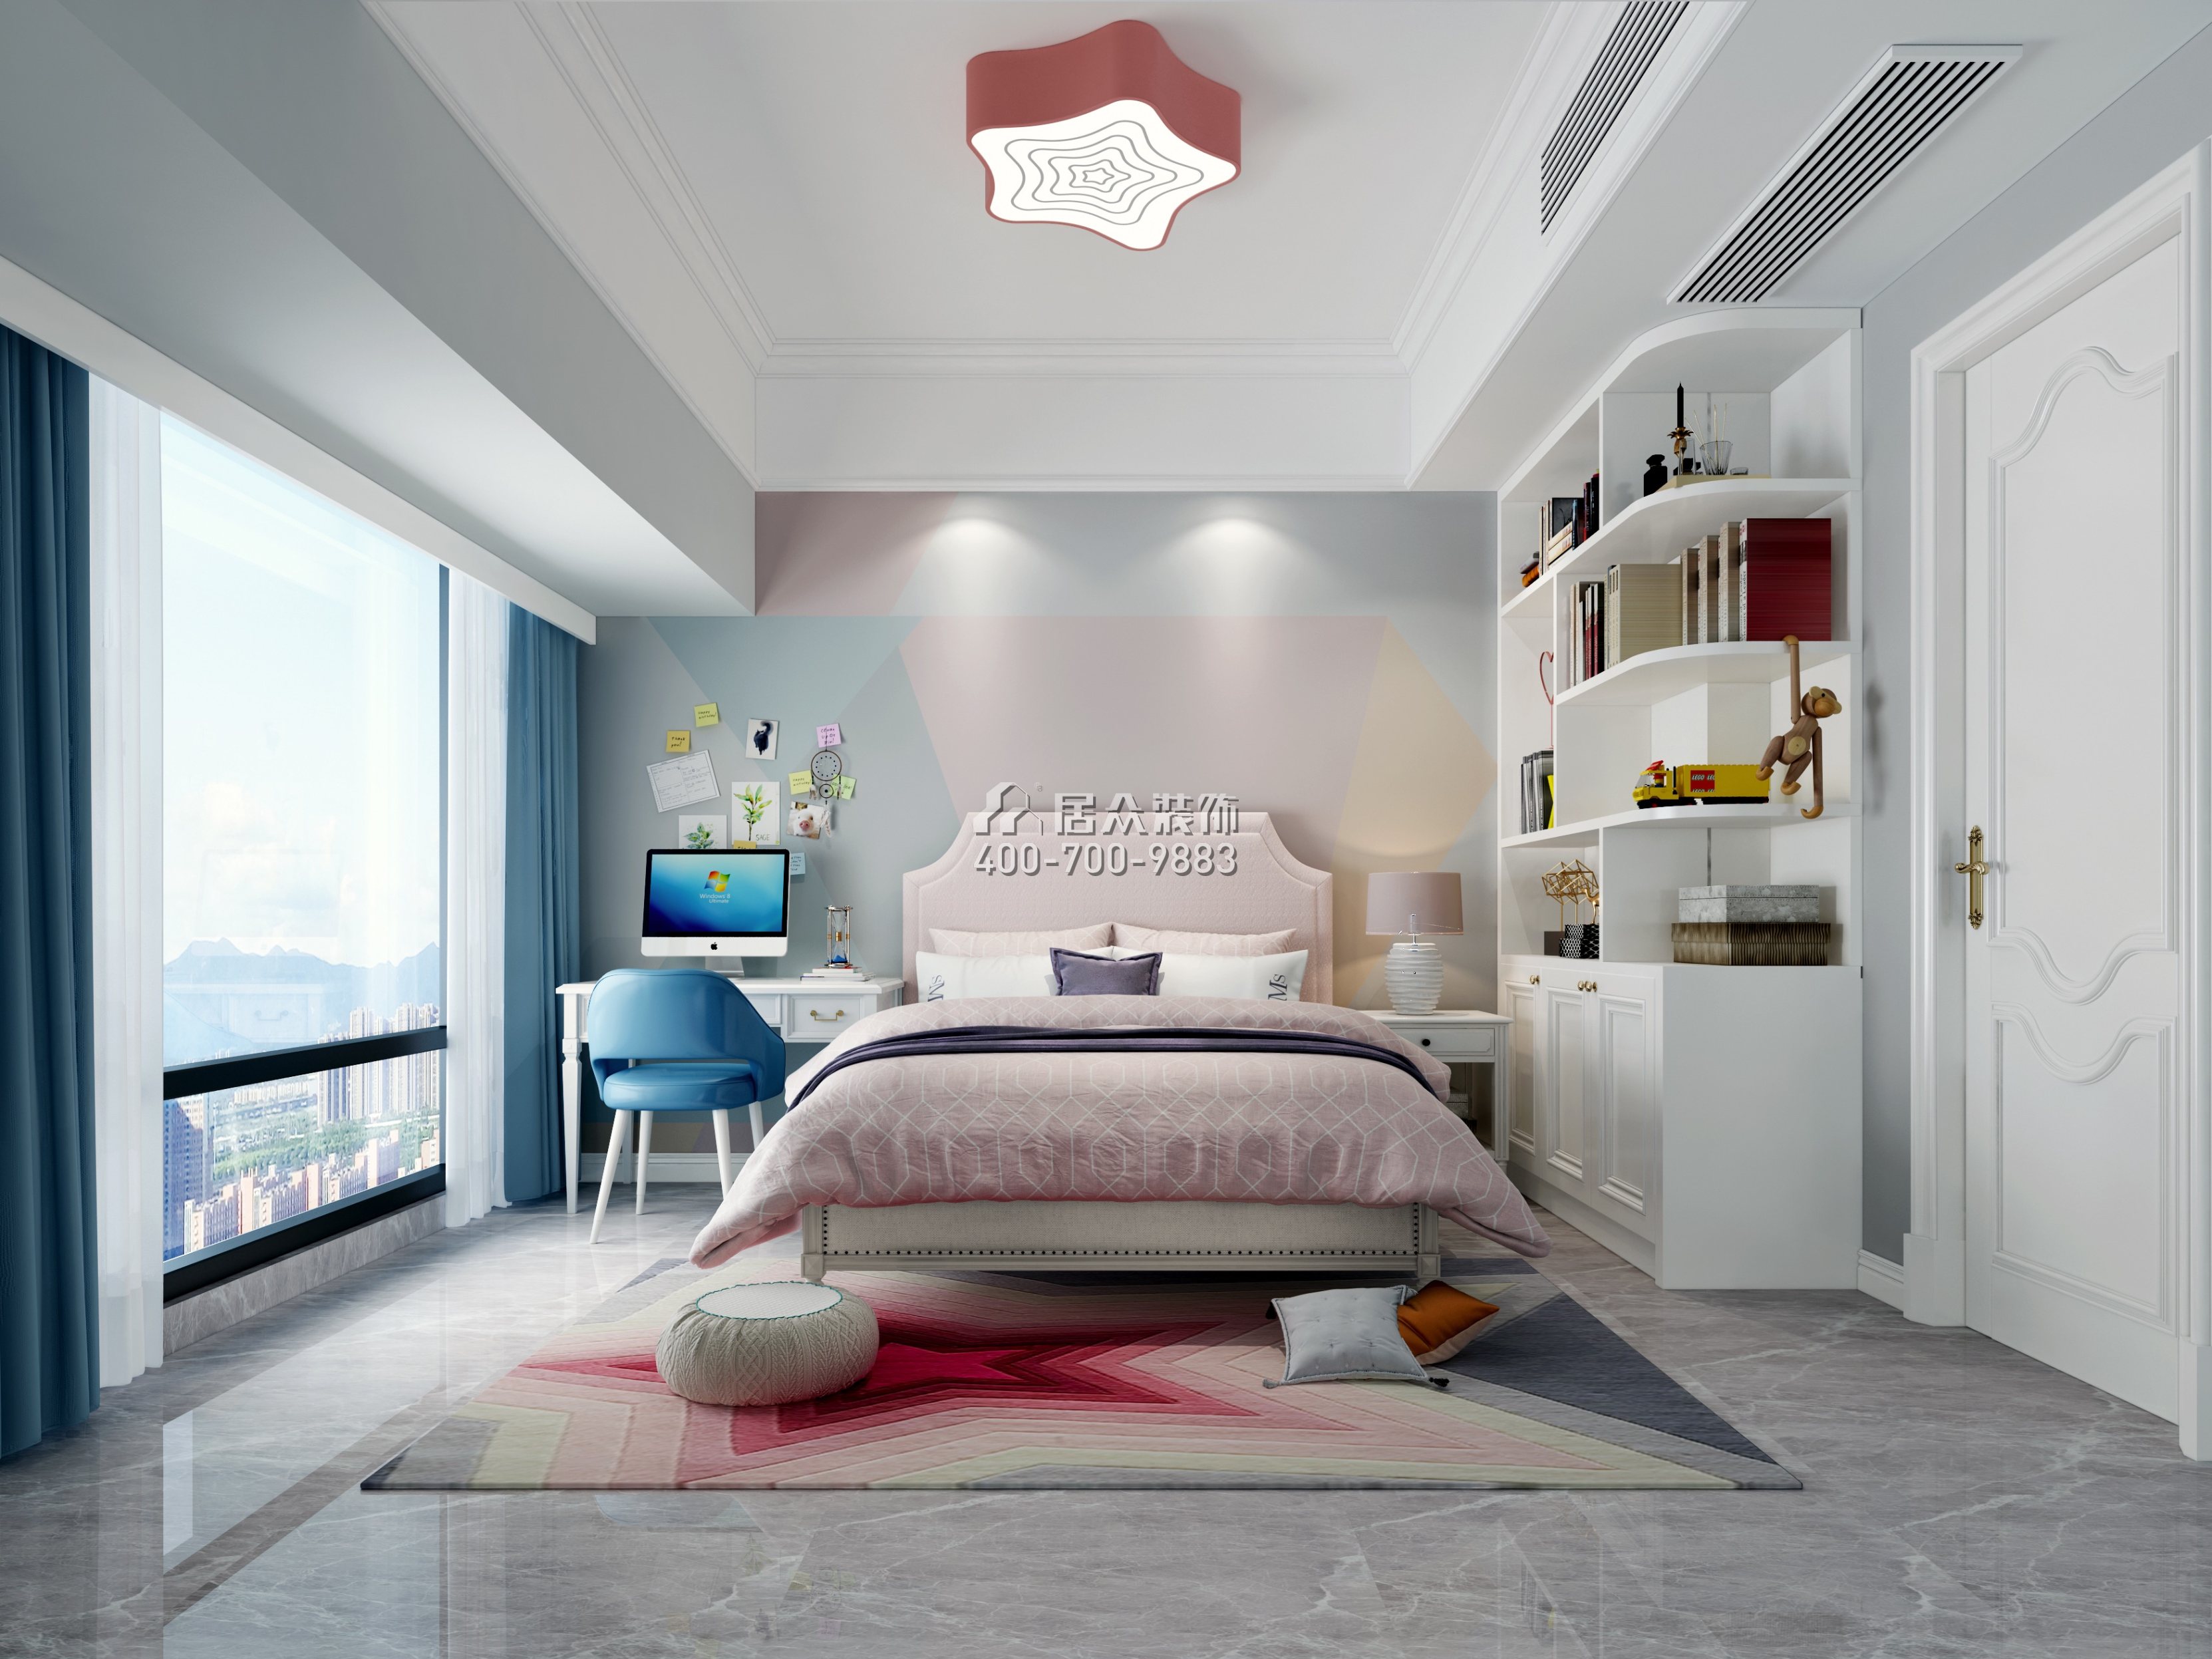 华联城市全景花园223平方米欧式风格平层户型卧室装修效果图